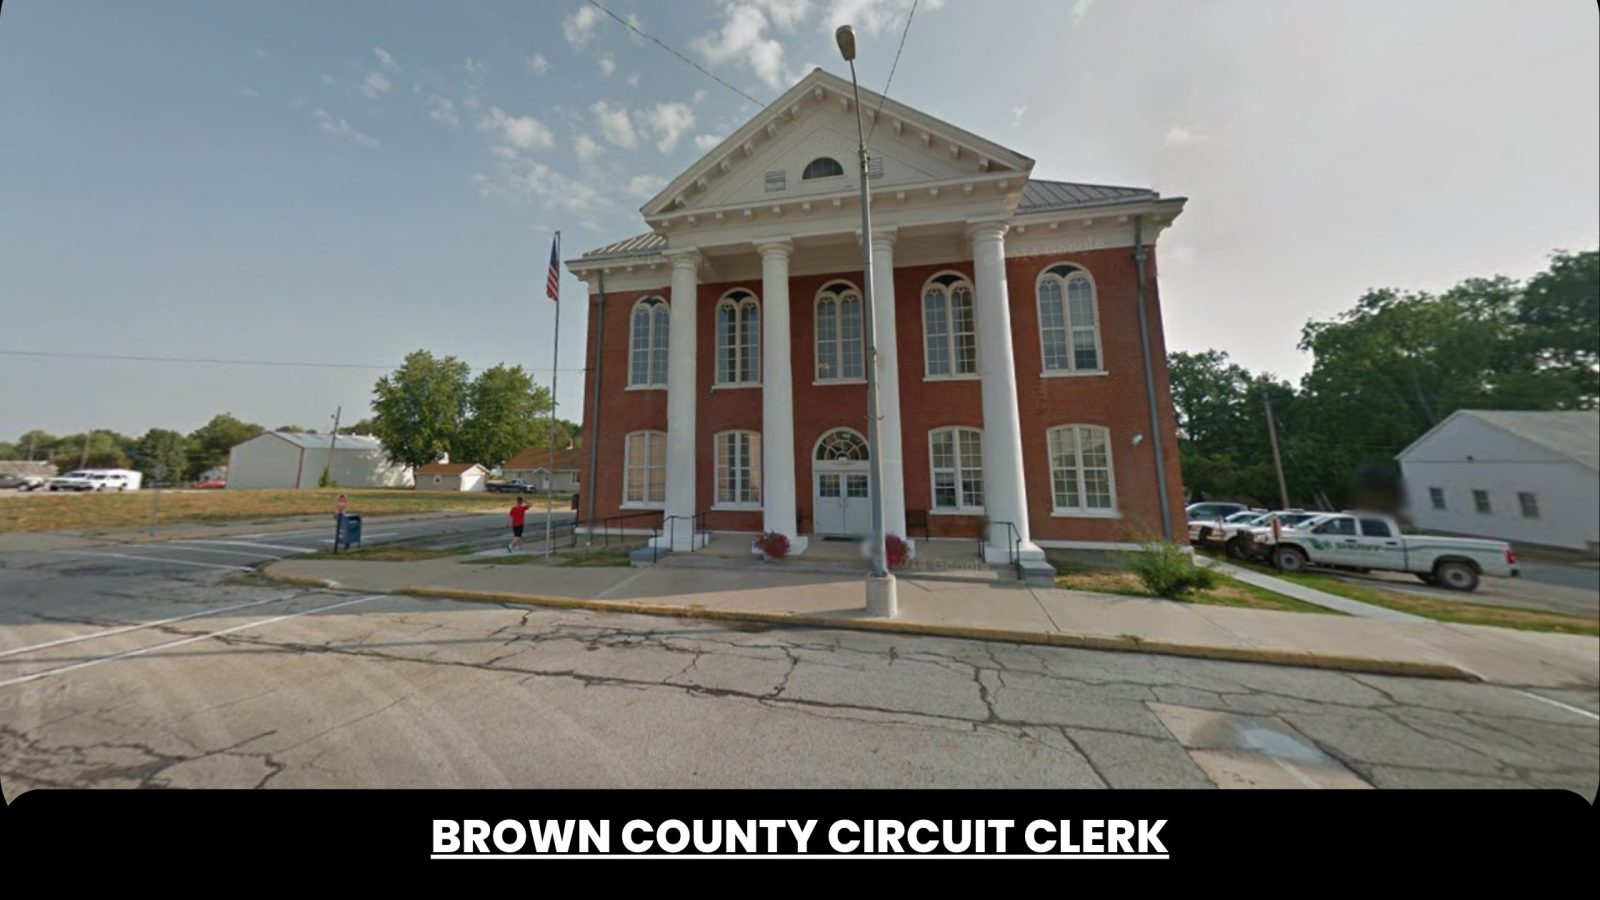 Brown County Circuit Clerk